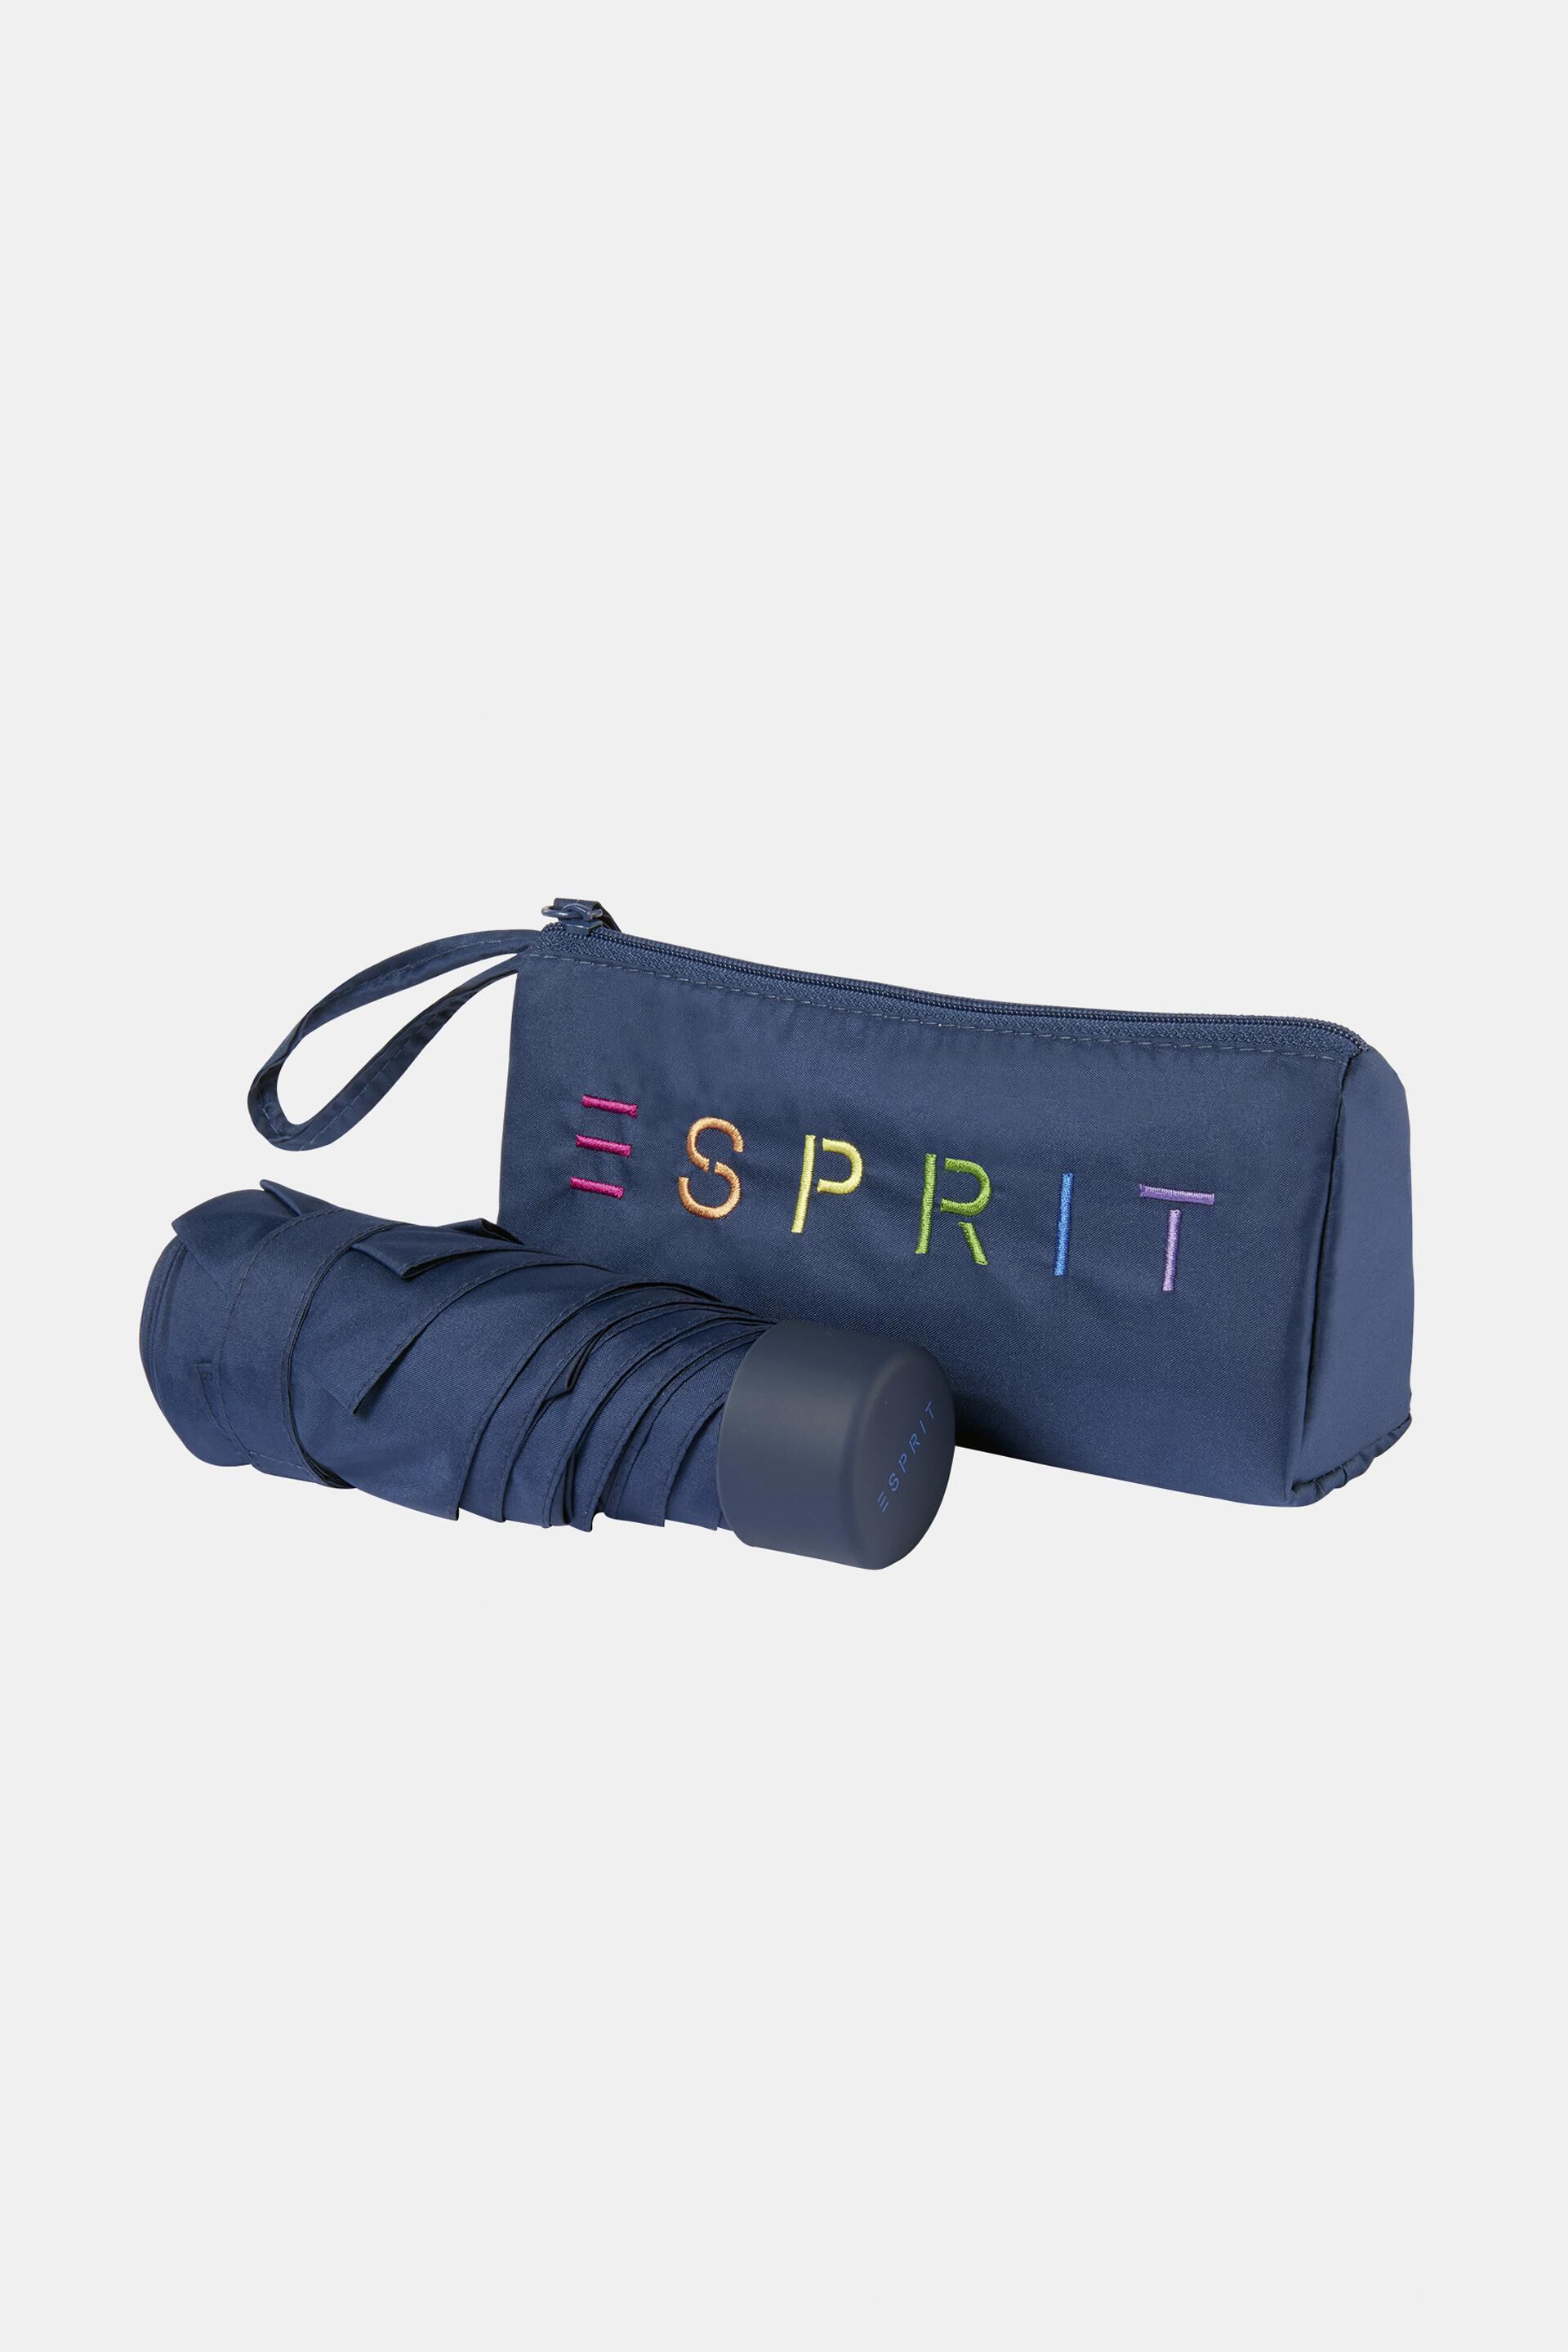 Esprit mit Ultra-Mini-Taschenschirm Reißverschlusstasche